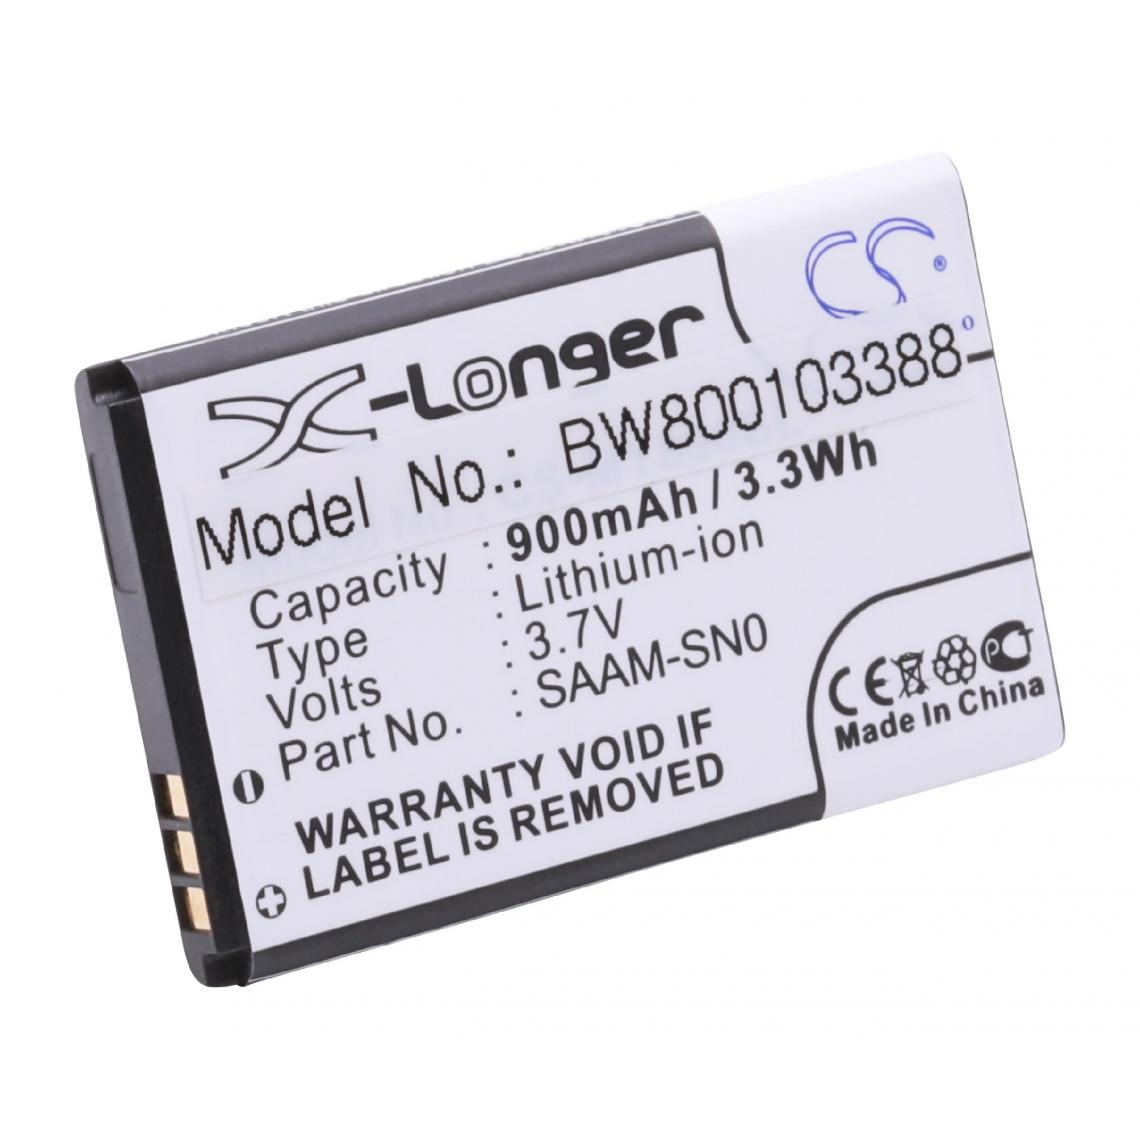 Vhbw - Batterie LI-ION 900mAh pour ALCATEL One Touch OT-860, OT-890, OT-890D remplace 189950240, SAAM-SN0, SAAM-SN1 - Batterie téléphone